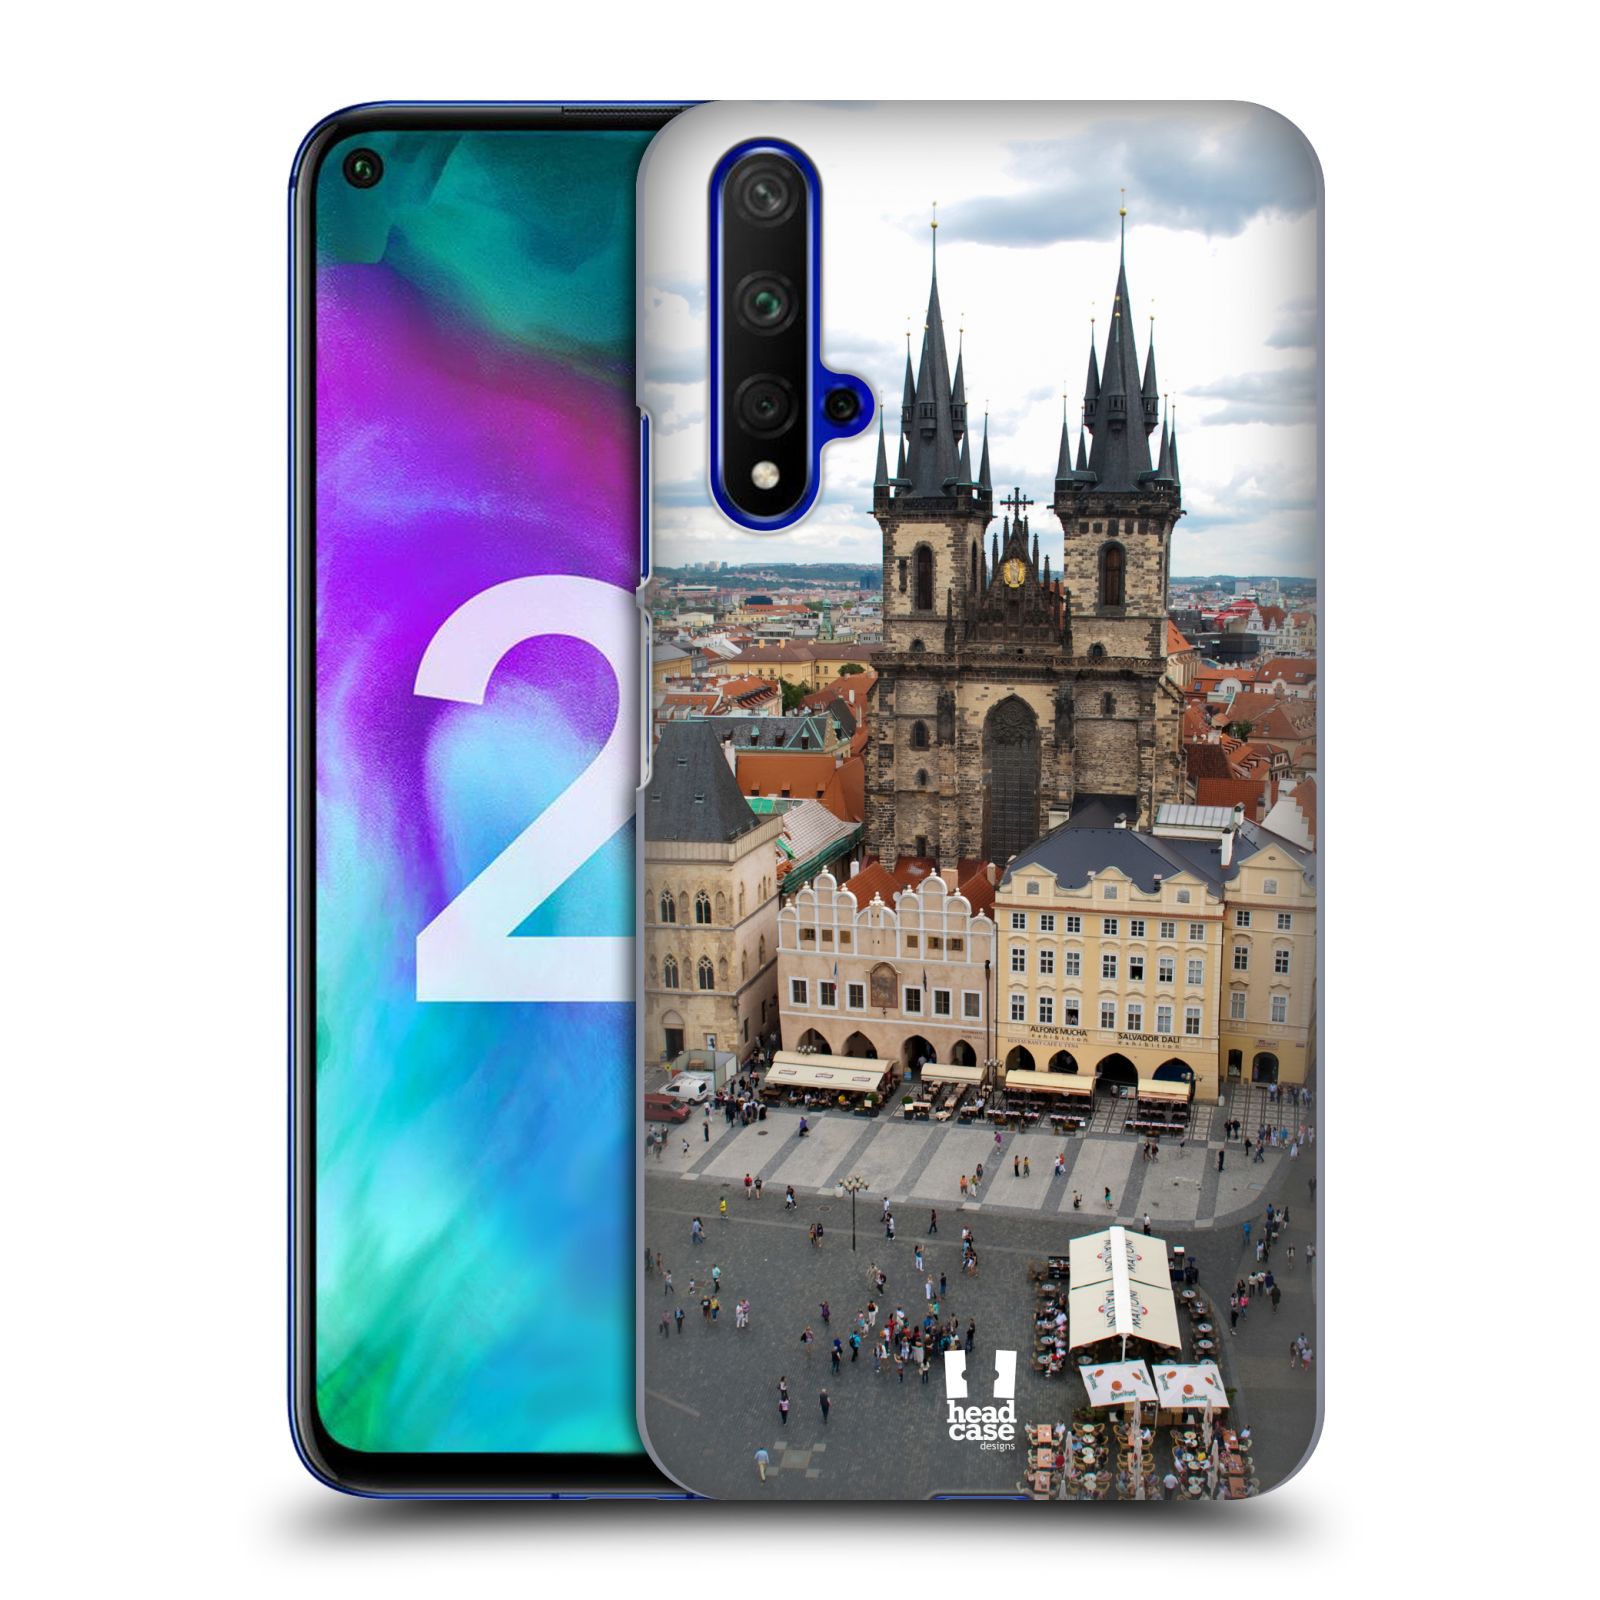 Pouzdro na mobil Honor 20 - HEAD CASE - vzor Města foto náměstí ČESKÁ REPUBLIKA, PRAHA, STAROMĚSTSKÉ NÁMĚSTÍ